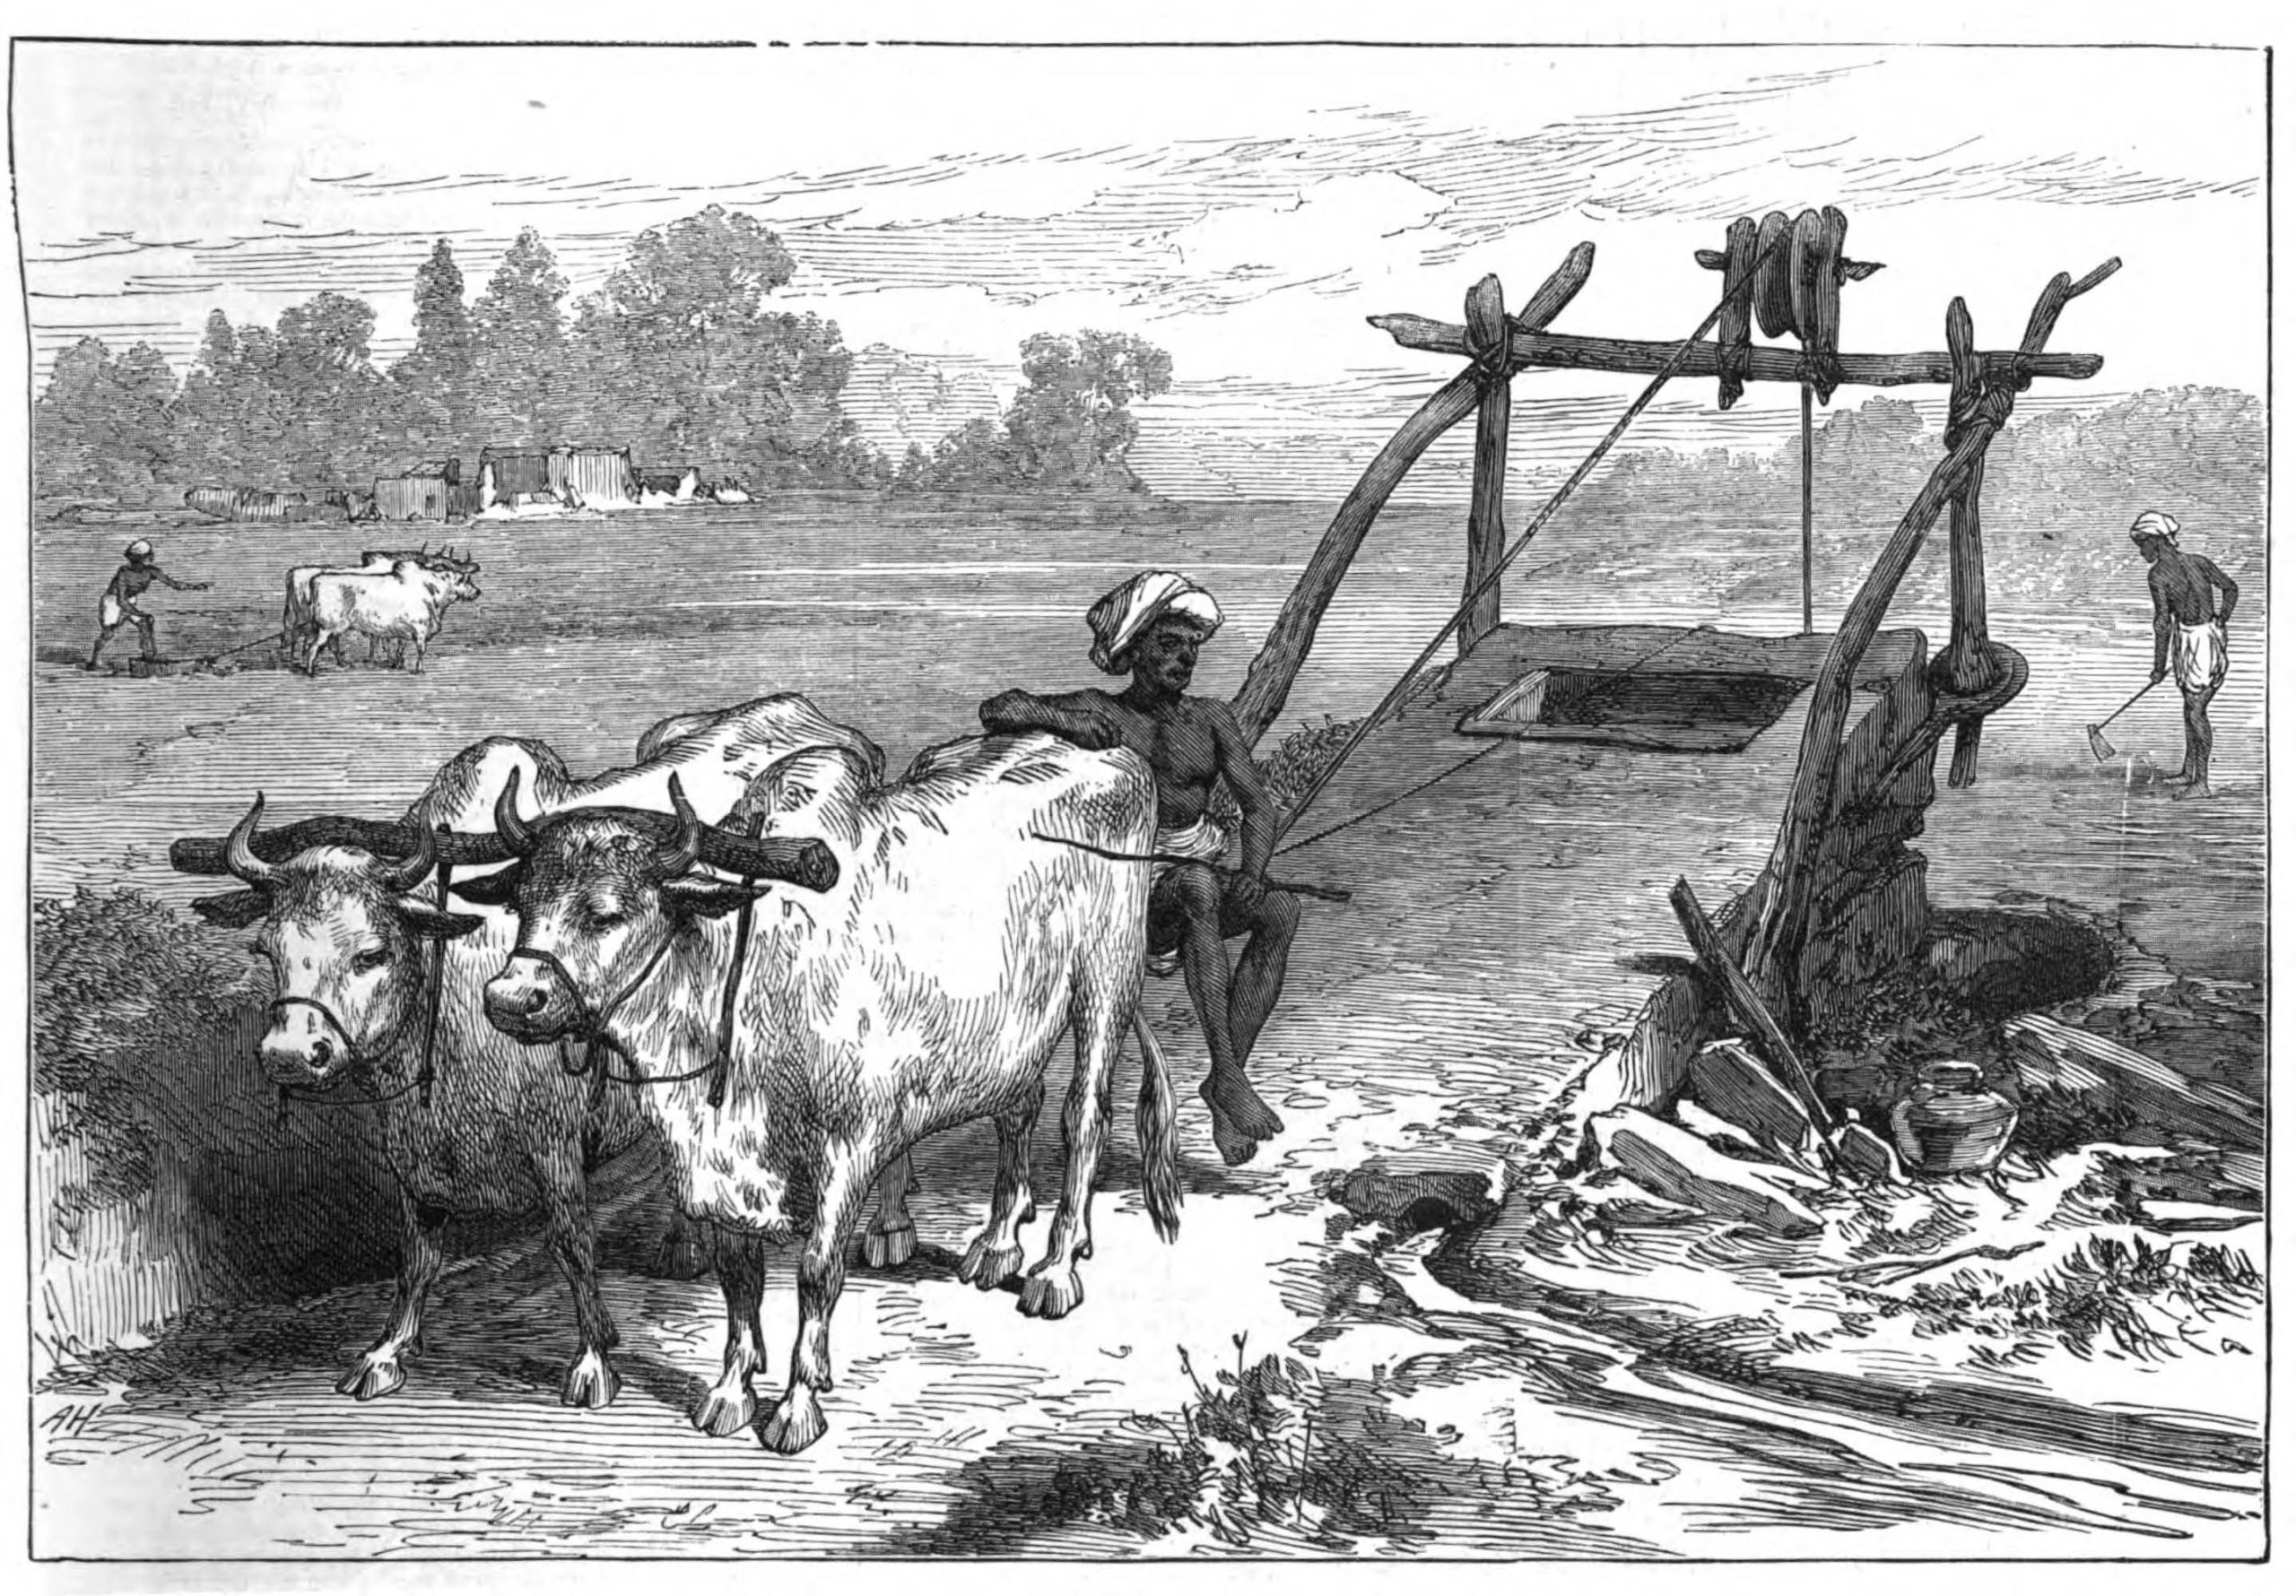 Agriculture in British Era